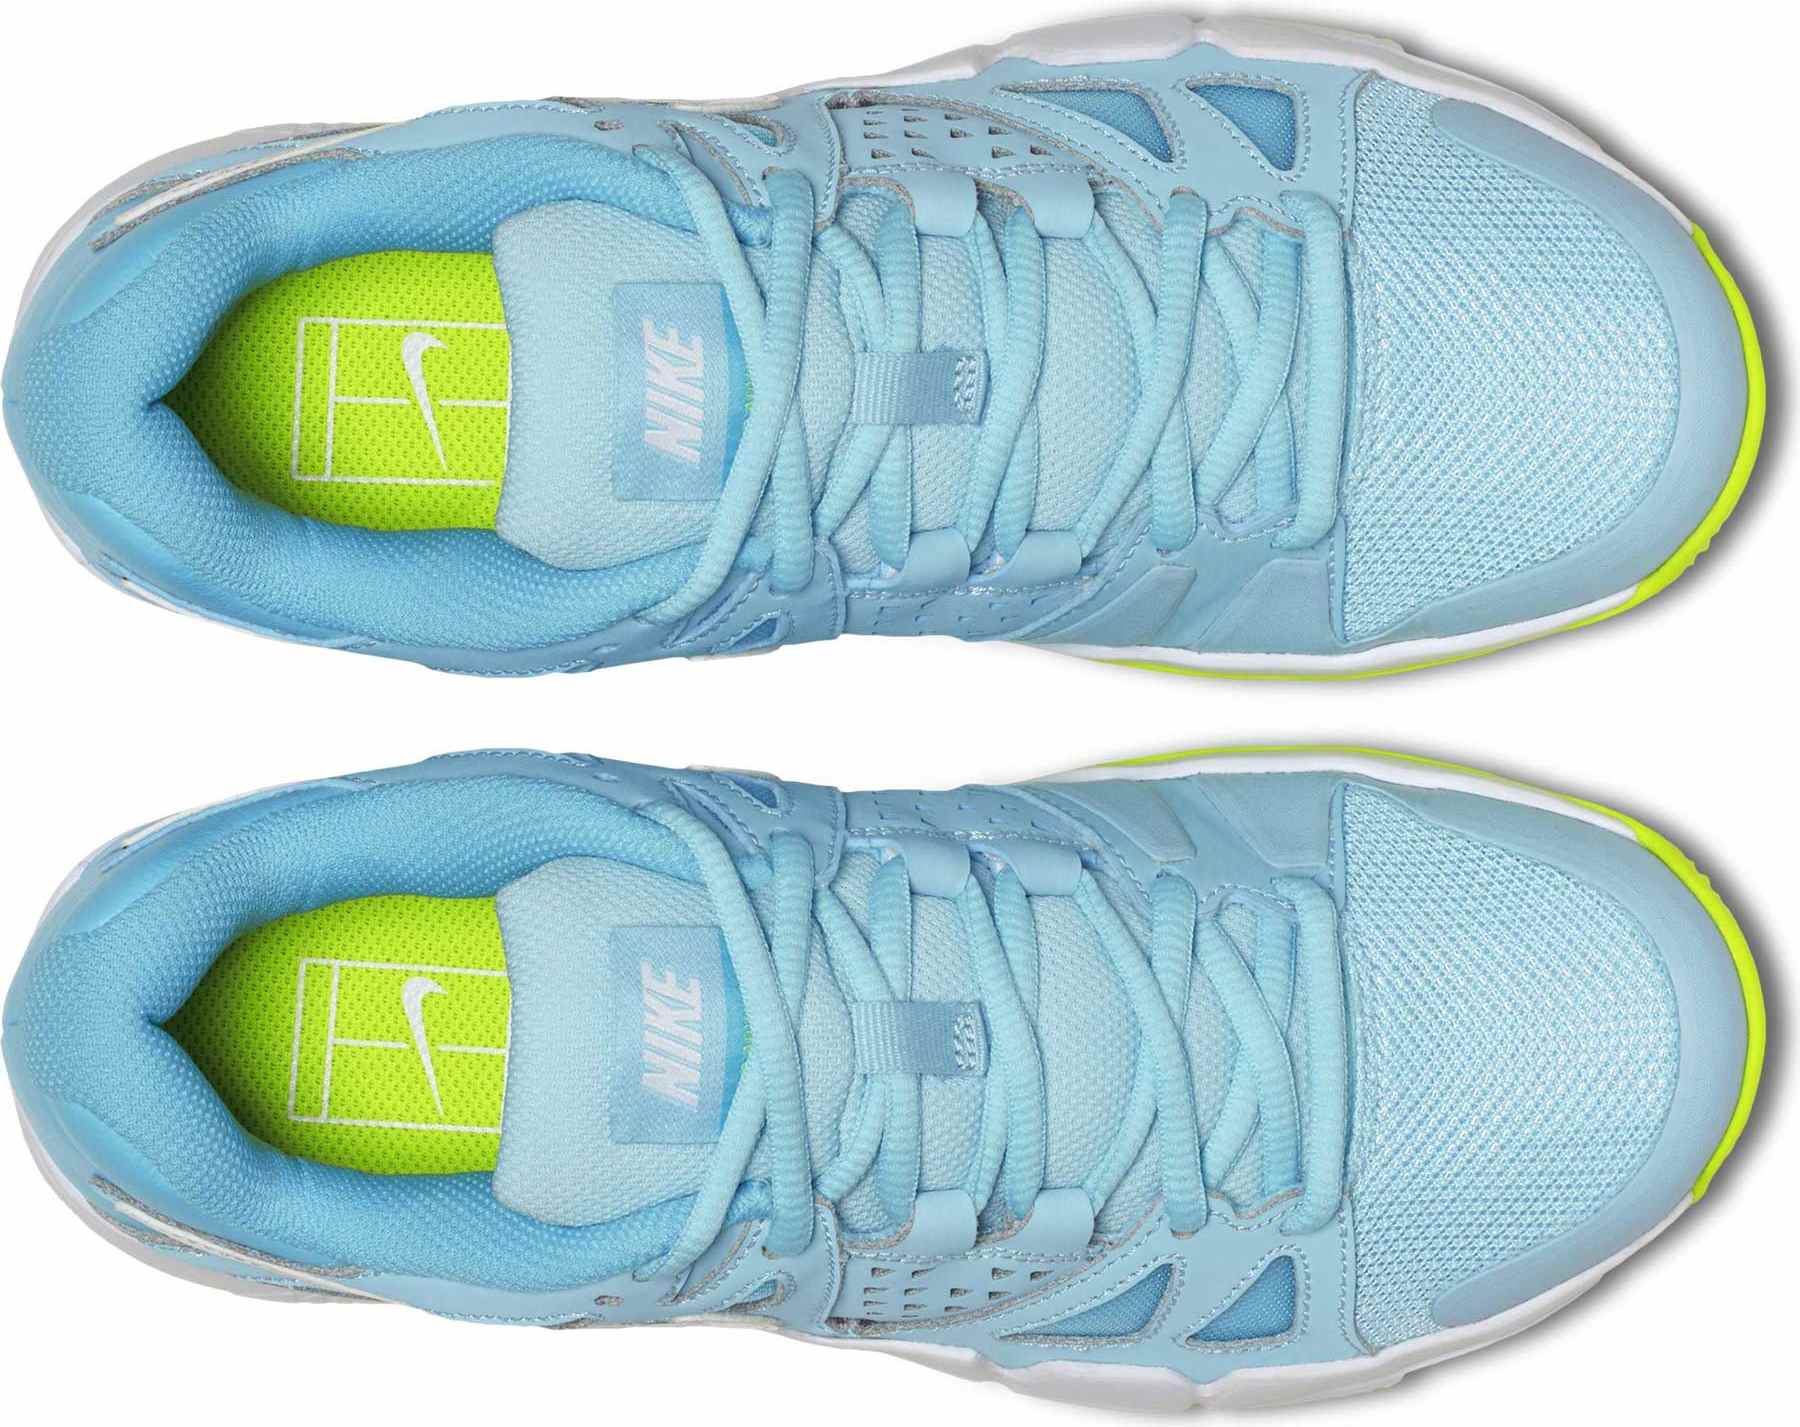 Women’s tennis shoes